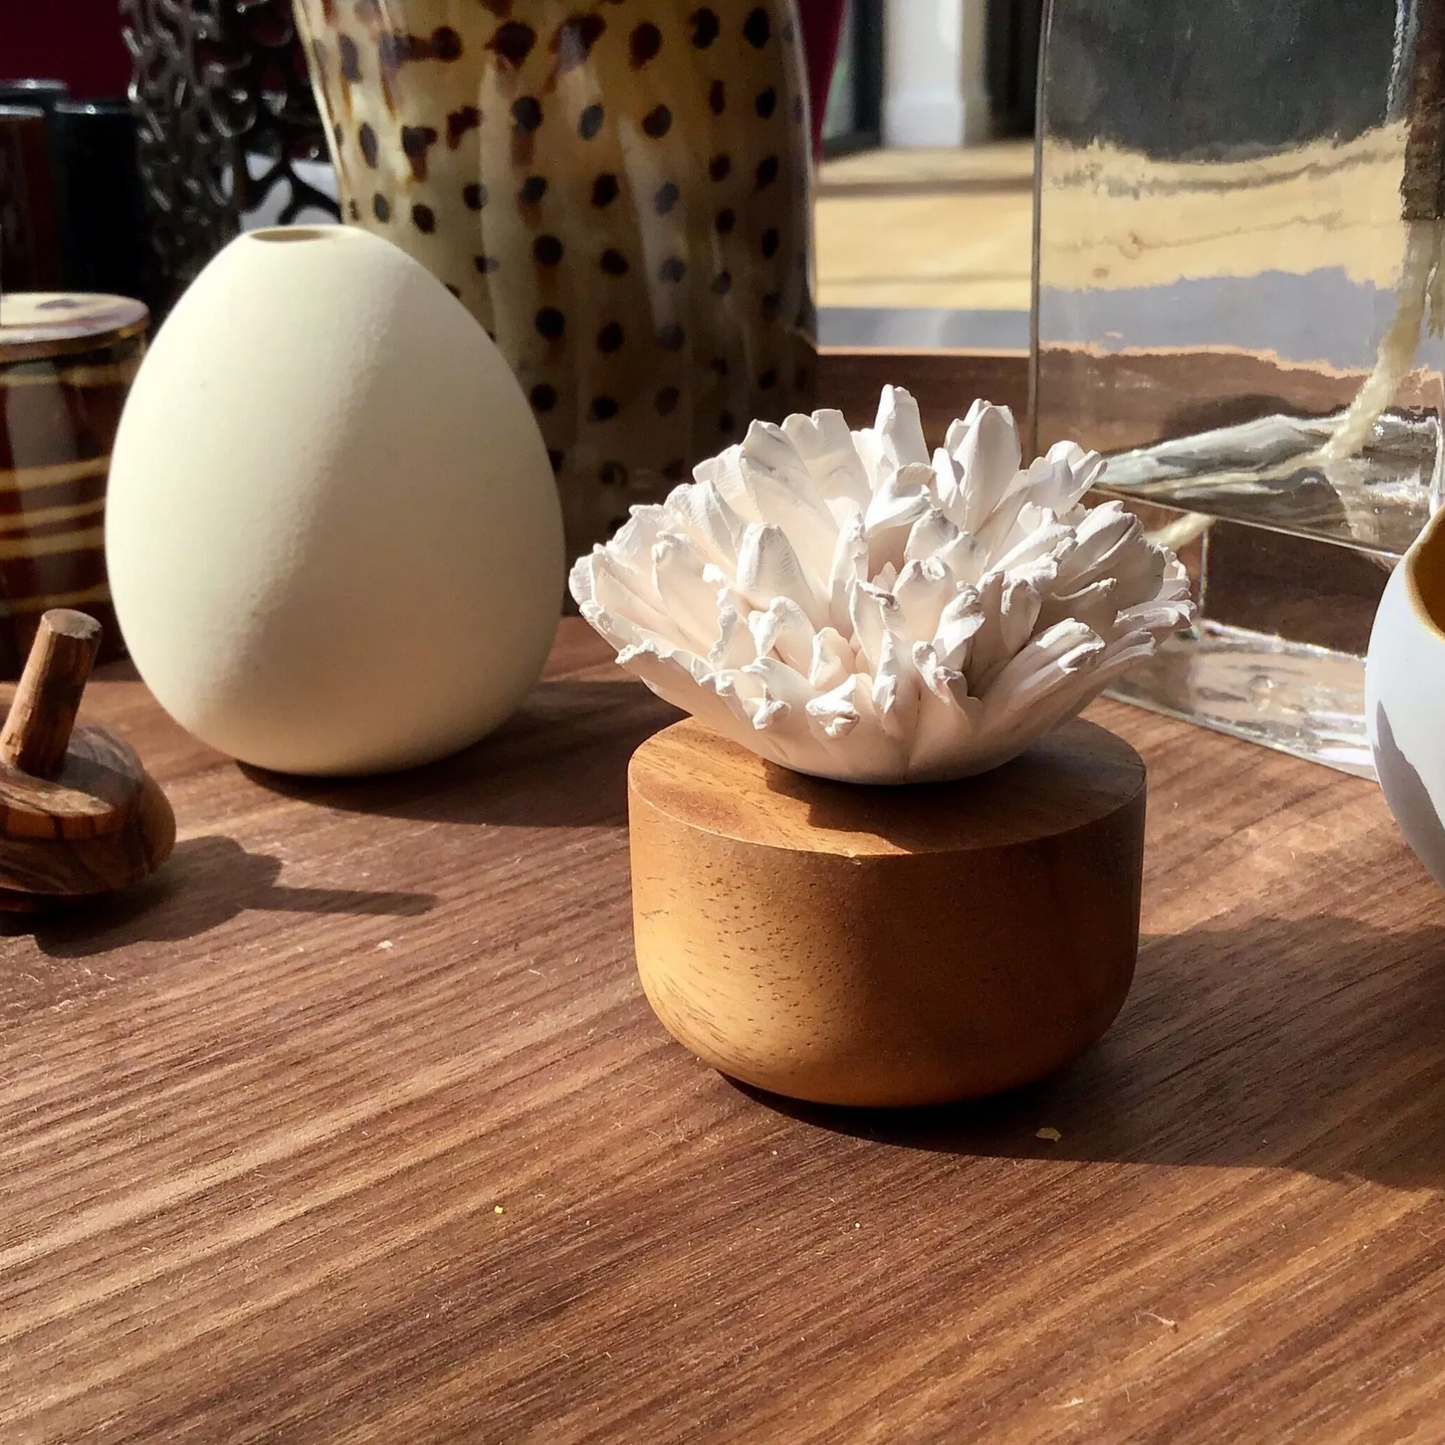 Raumduft-Diffusor aus Keramik, Japanische Nelke weiß (7cm) - ANOQ